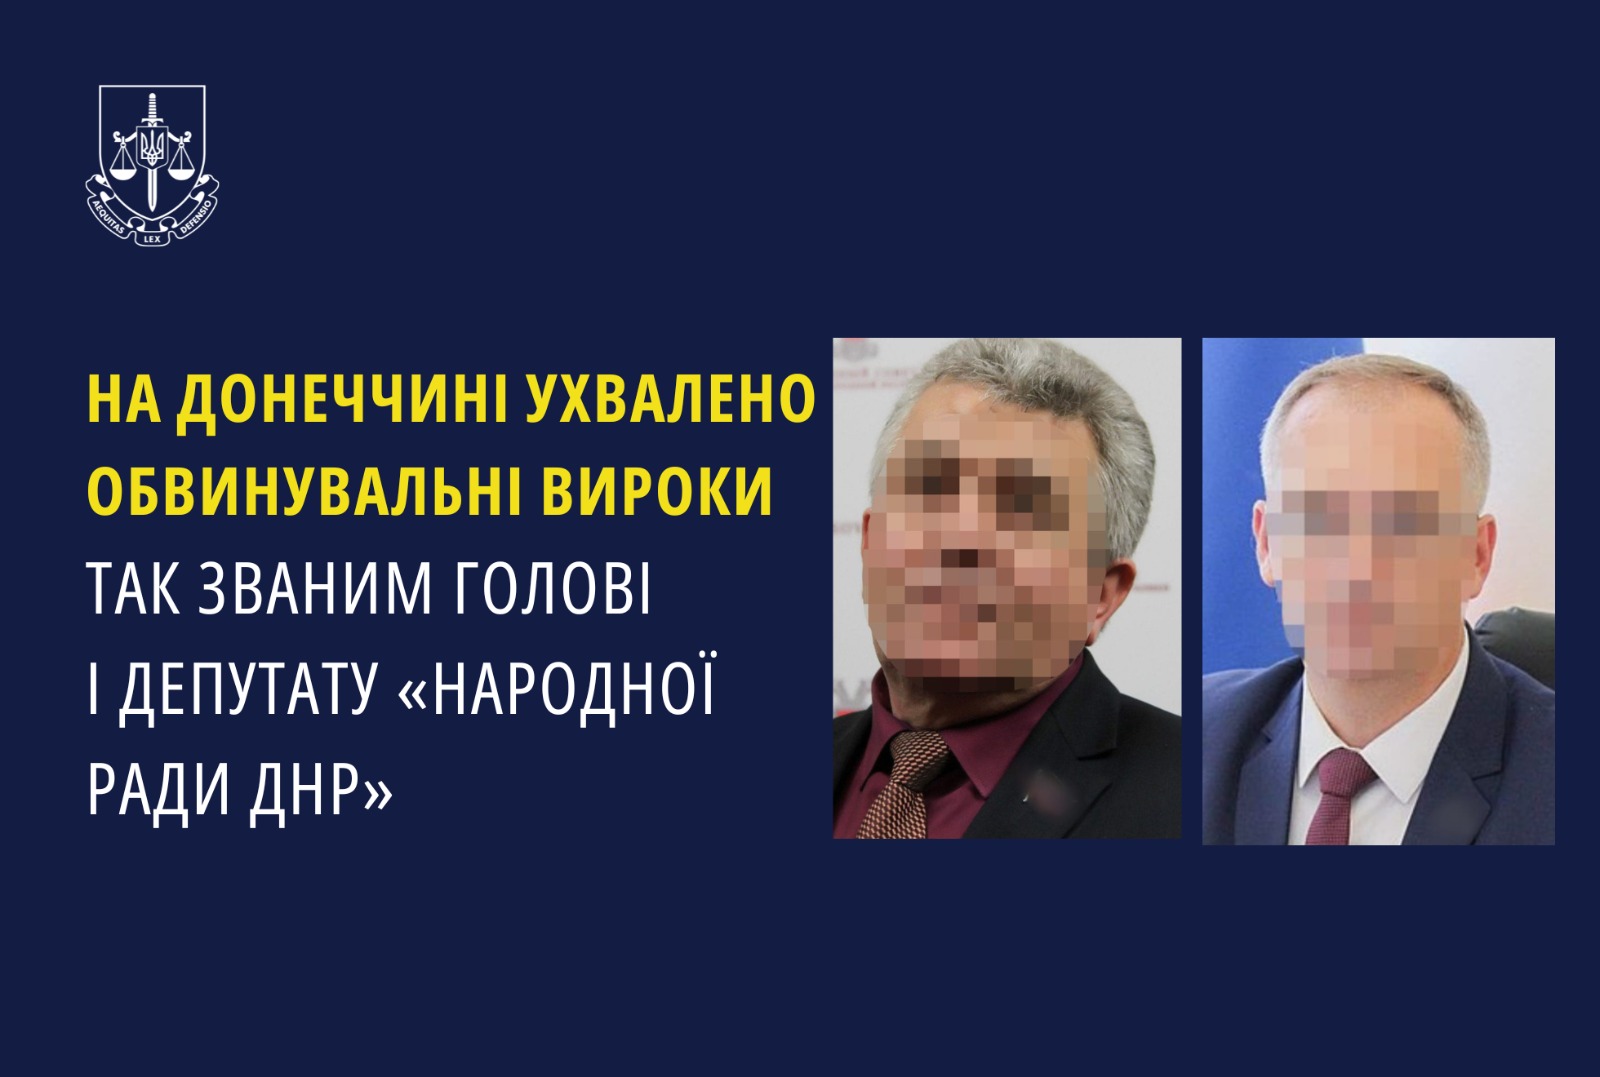 На Донеччині ухвалено обвинувальні вироки так званим голові і депутату «народної ради днр»